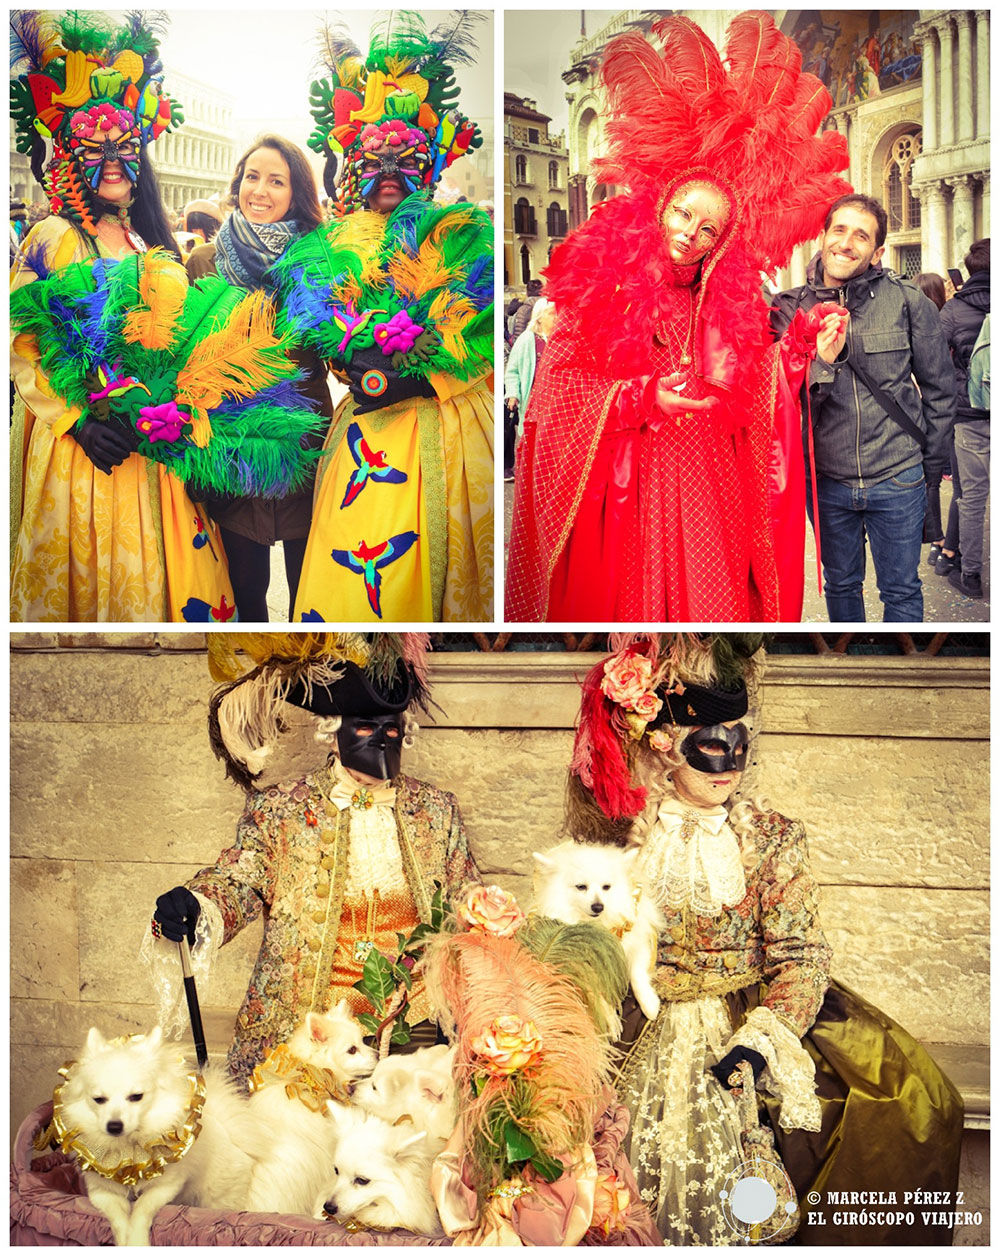 Sonrisas y alegría provoca el carnaval veneciano entre los asistentes ©Marcela Pérez Z.